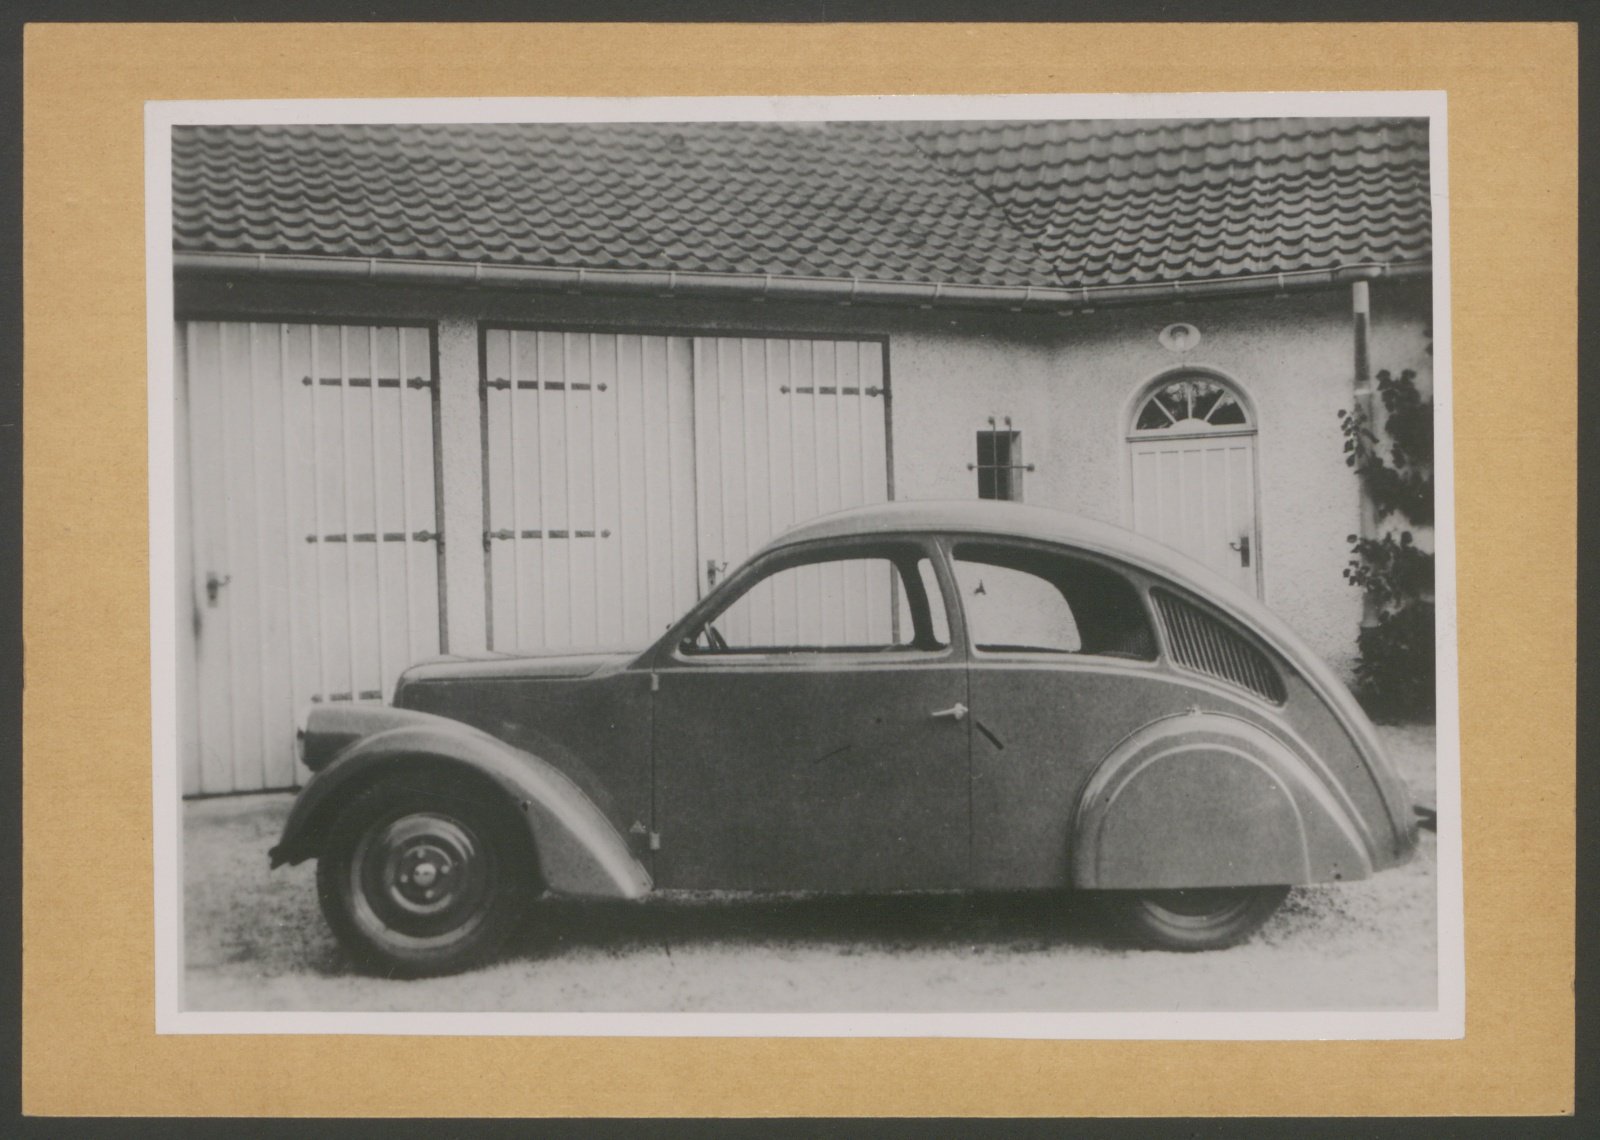 Fotografie: Seitenansicht einer Limousine vor Garage (Stiftung Deutsches Technikmuseum Berlin CC0)